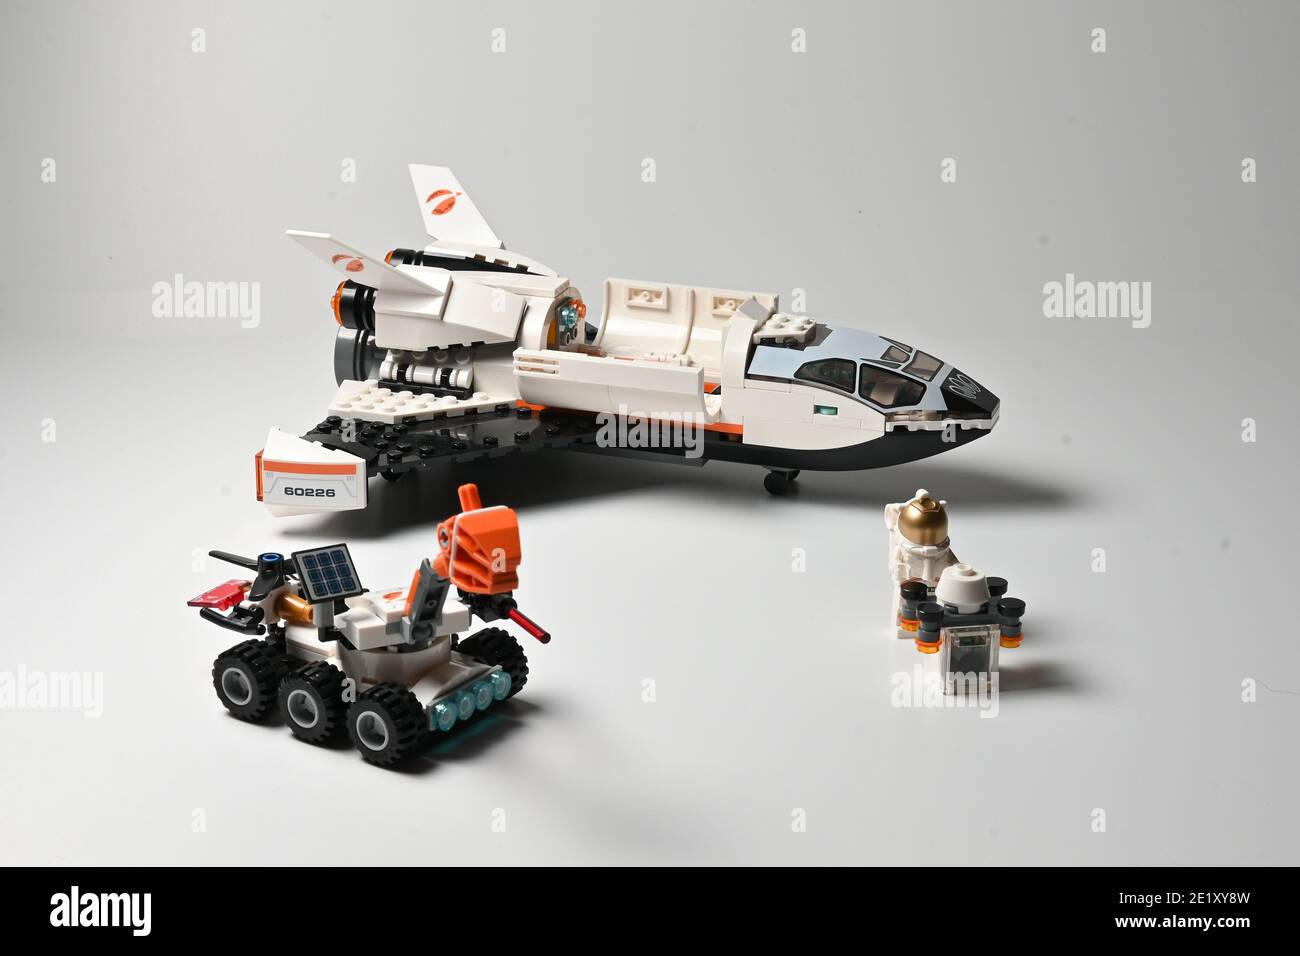 Lego space immagini e fotografie stock ad alta risoluzione - Alamy